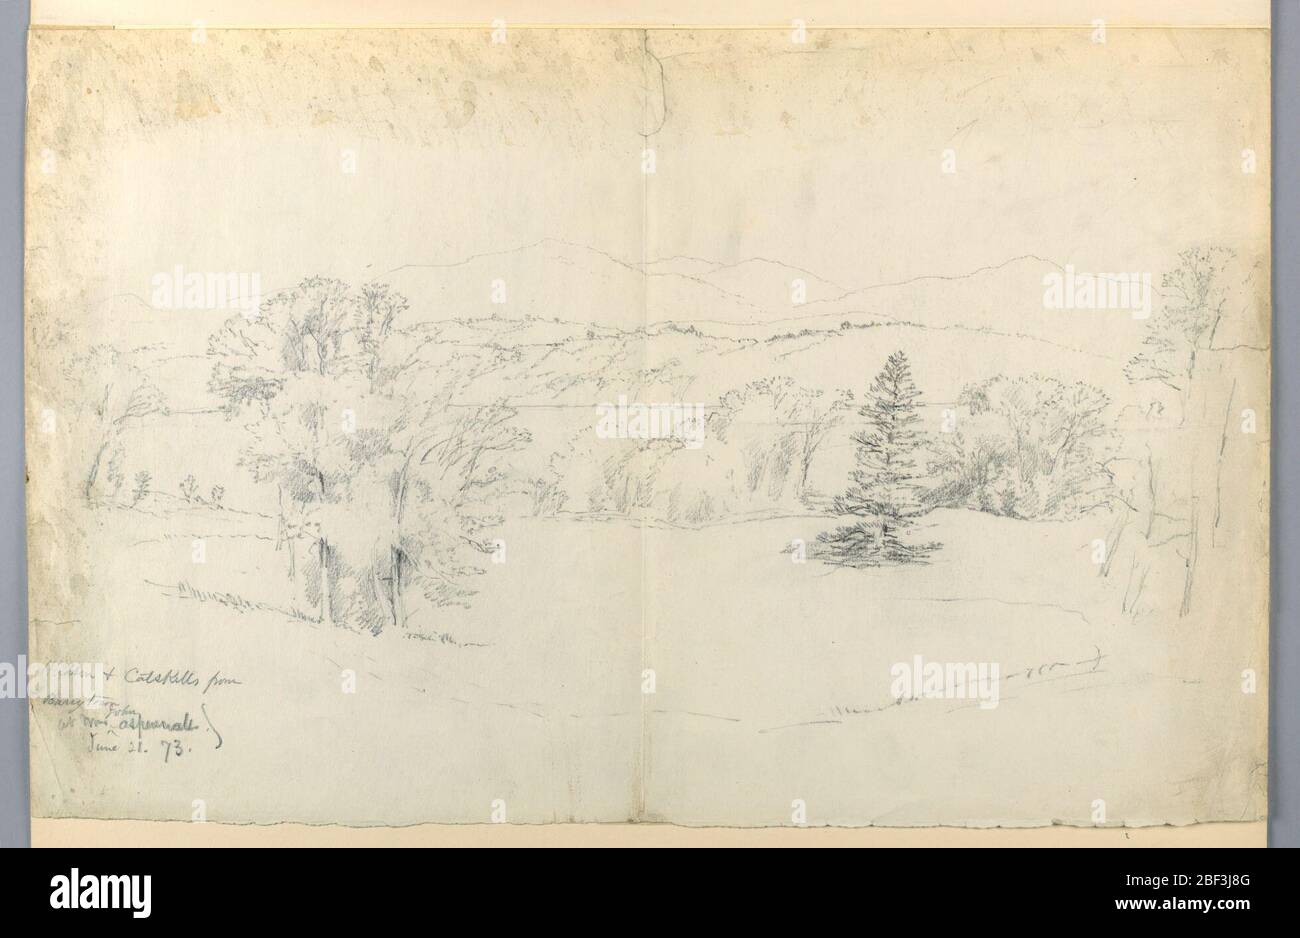 Der Hudson River und Catskills von Barrytown. Wiese mit Bäumen im Vordergrund, abfallend zum Flussufer. Fluss und Grate über Zentrum der Komposition, dann Berge jenseits in der Ferne. Stockfoto